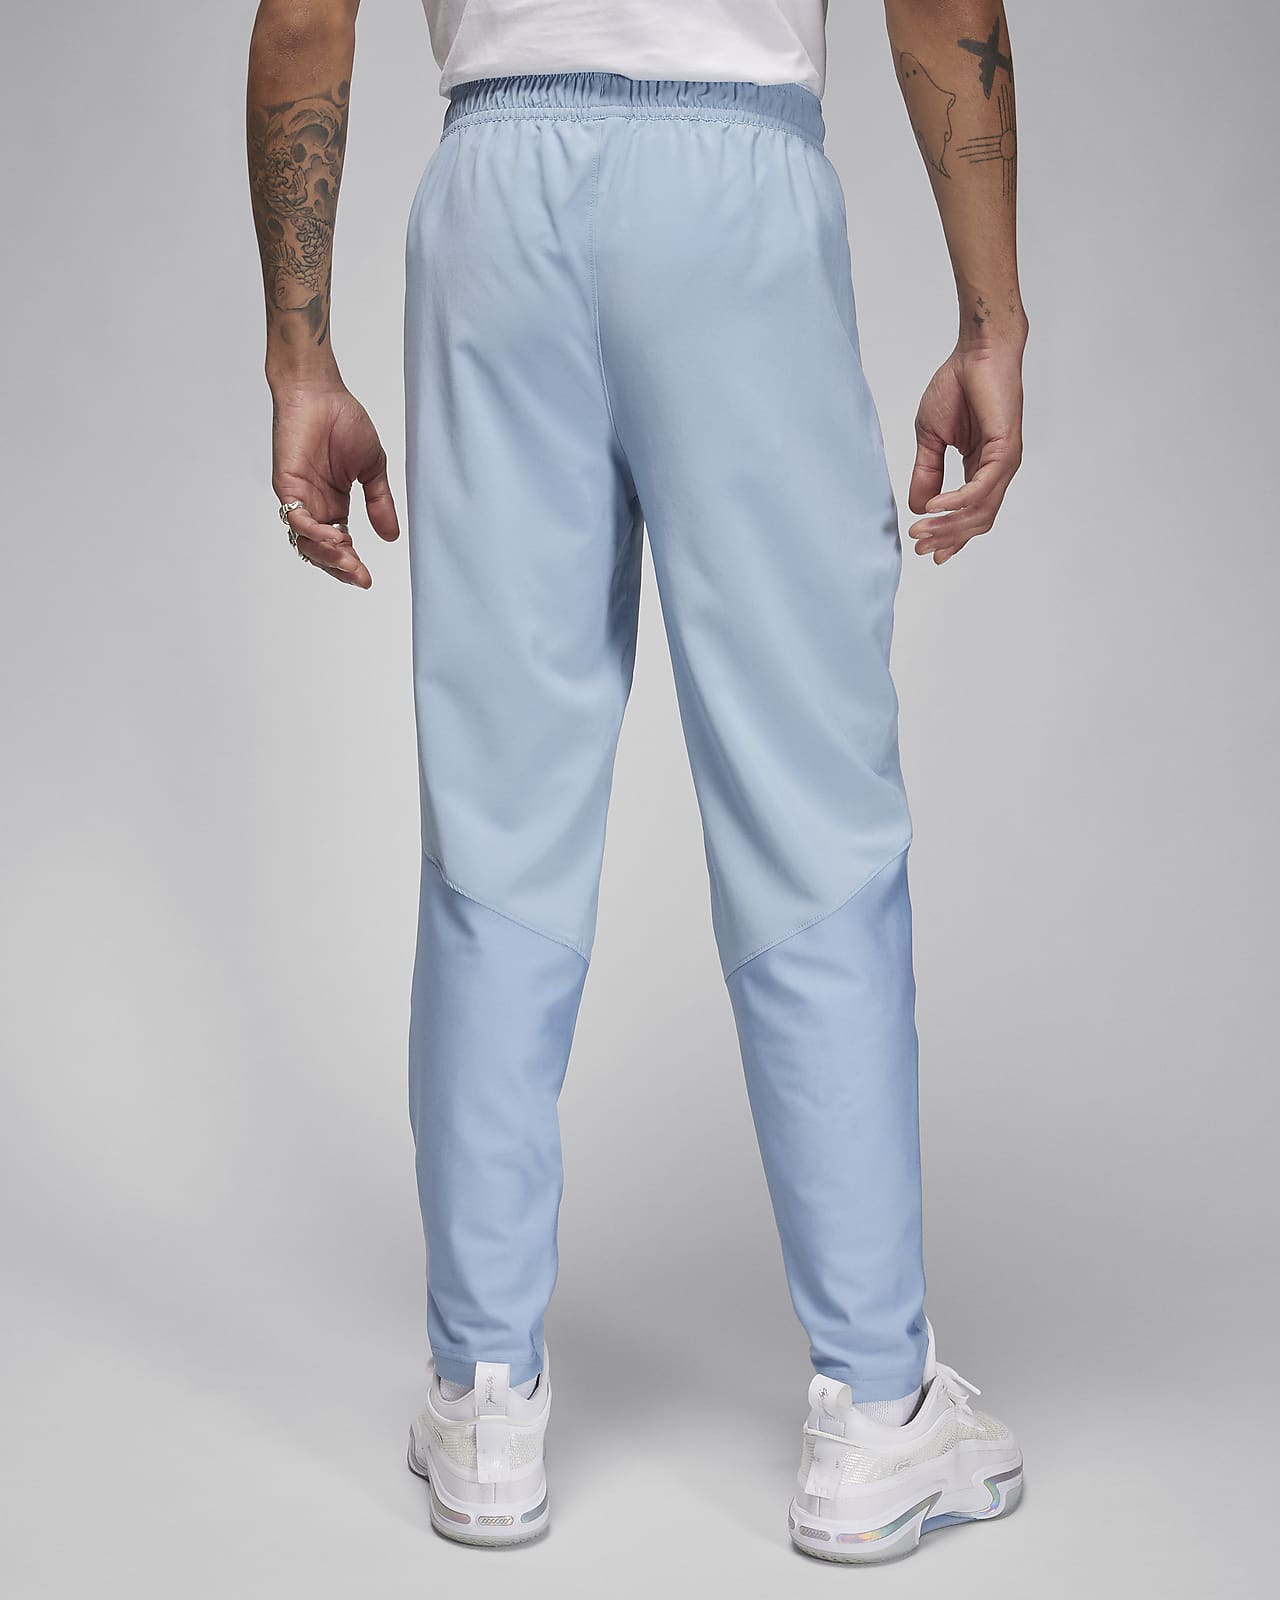 Nike Side Stripe Print Pants Foot Zipper Knit Sports Trousers Men's Bl -  KICKS CREW